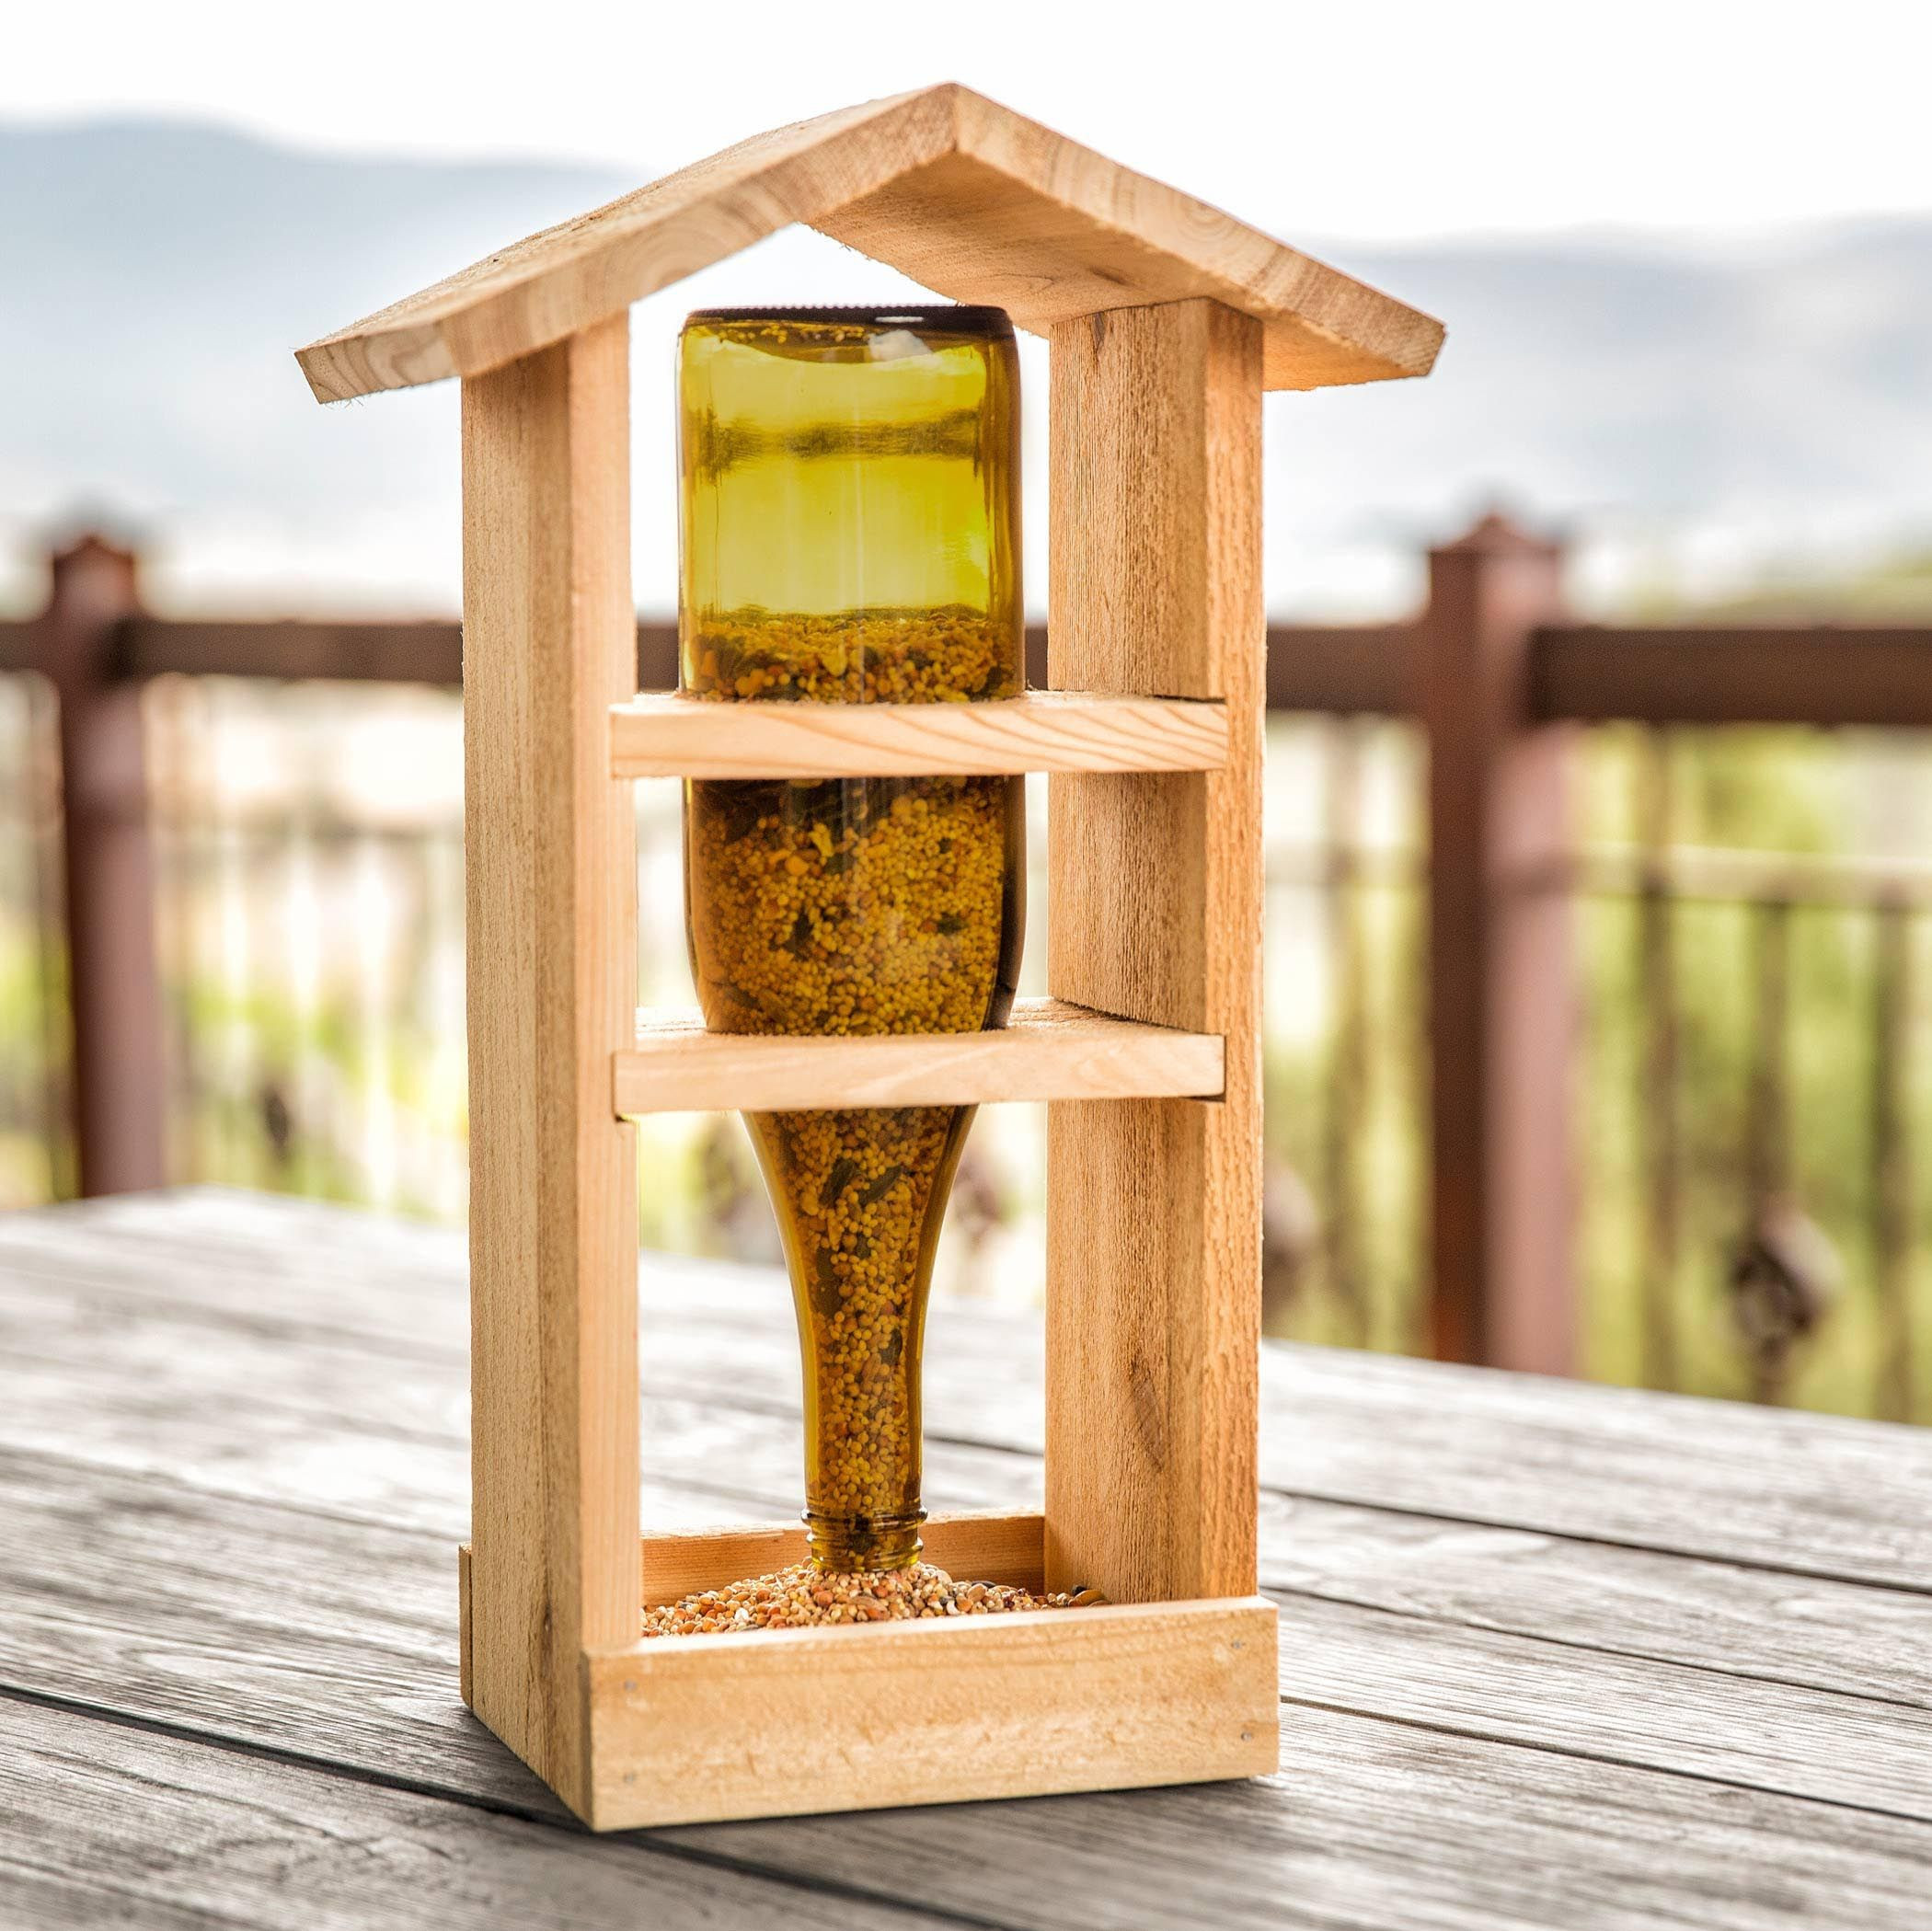 Best ideas about DIY Wooden Bird Feeders
. Save or Pin Homemade Wooden Bird Feeders Bird Feeders Now.